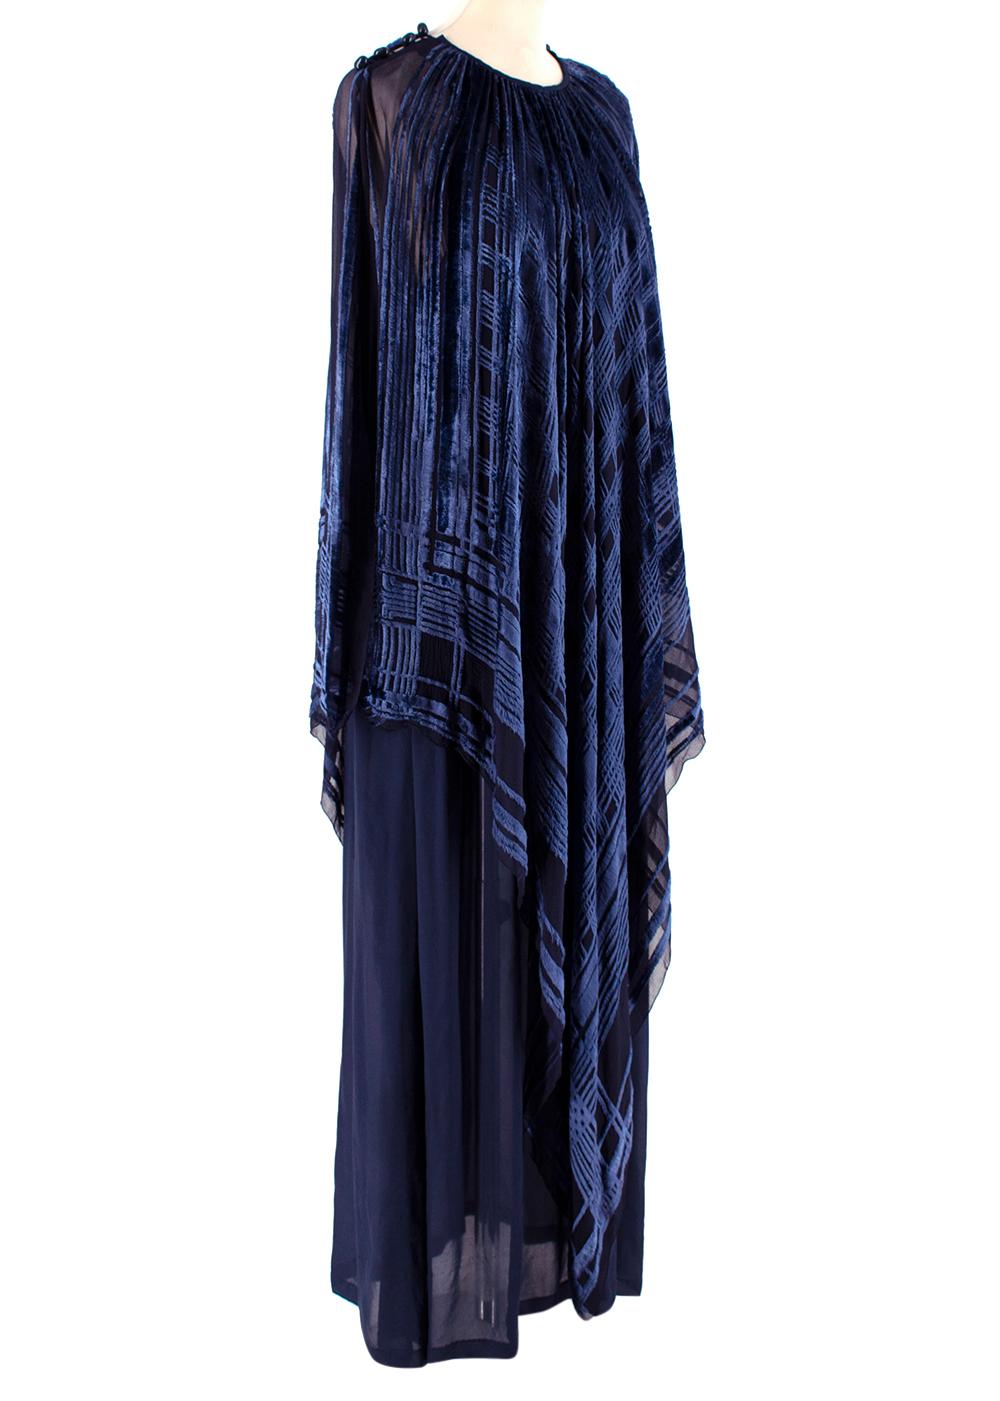 Lanvin Vintage Blue Silk-Blend Kimono Dress

- Vintage Lanvin gown 
- Blue textured checked velvet design
- Floor length
- Beaded embellishment on shoulders
- Draped silhouette 
- Navy blue slip 
- Slip on style 

Materials: 
60% Viscose, 40% Silk